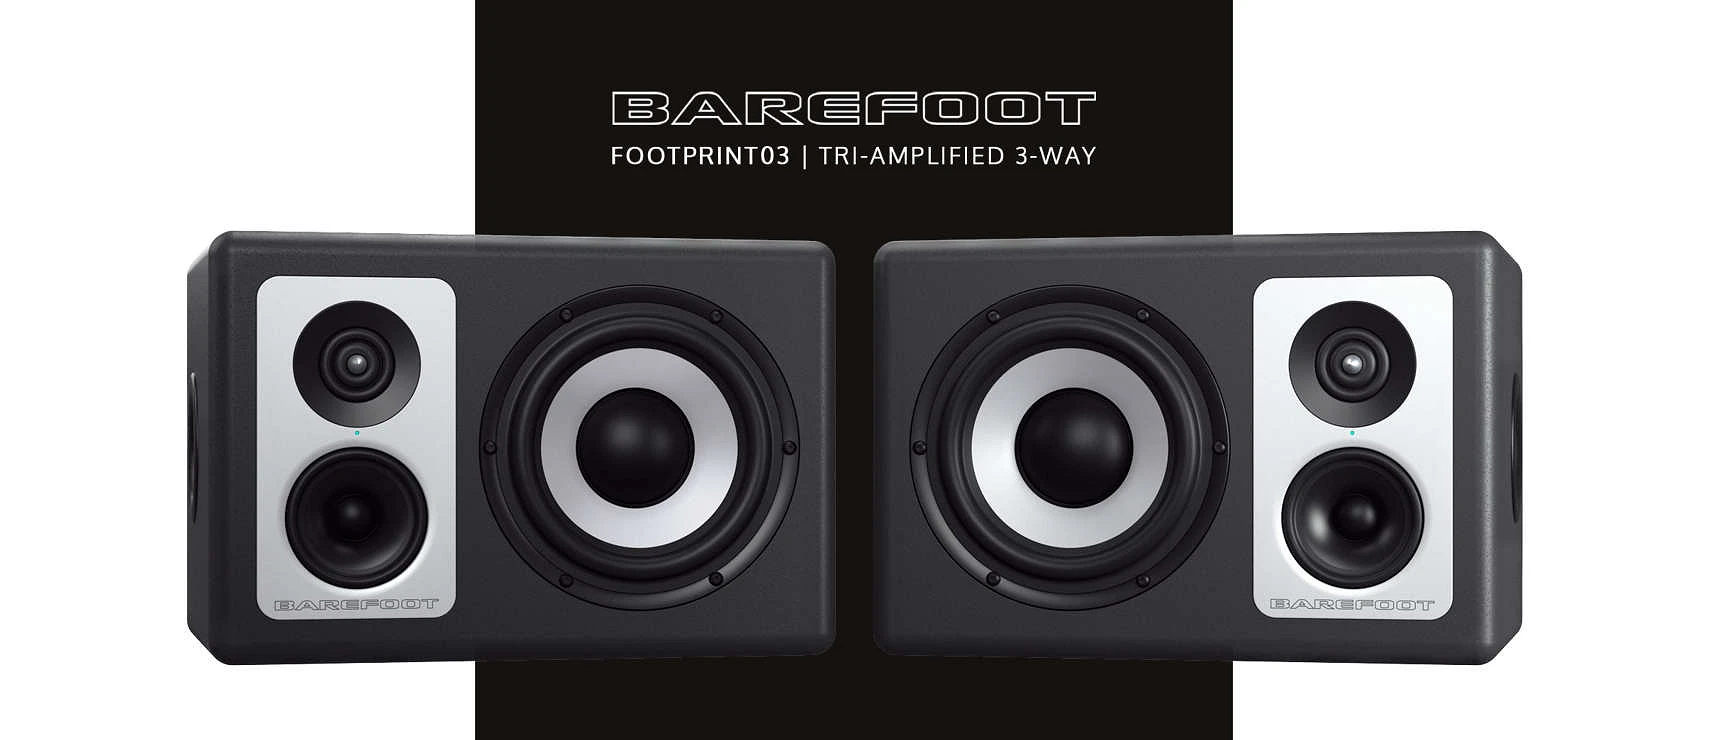 Barefoot Sound Footprint03